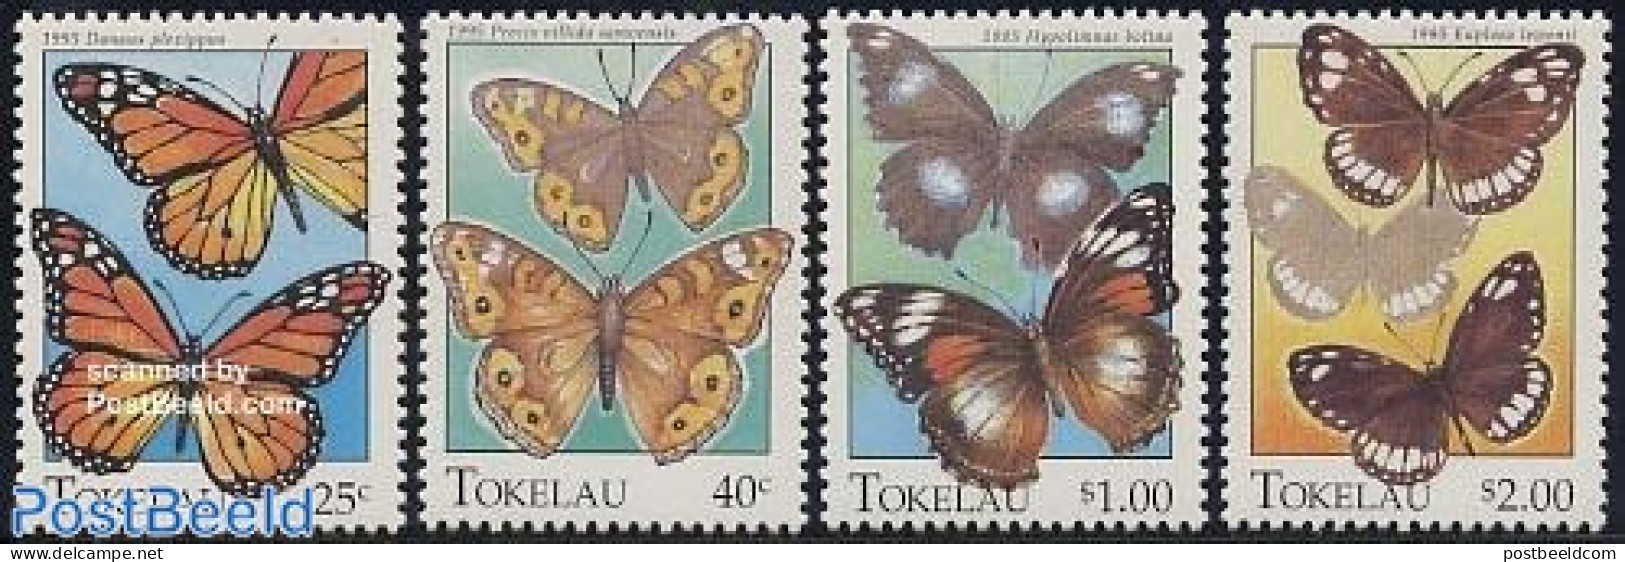 Tokelau Islands 1995 Butterflies 4v, Mint NH, Nature - Butterflies - Tokelau